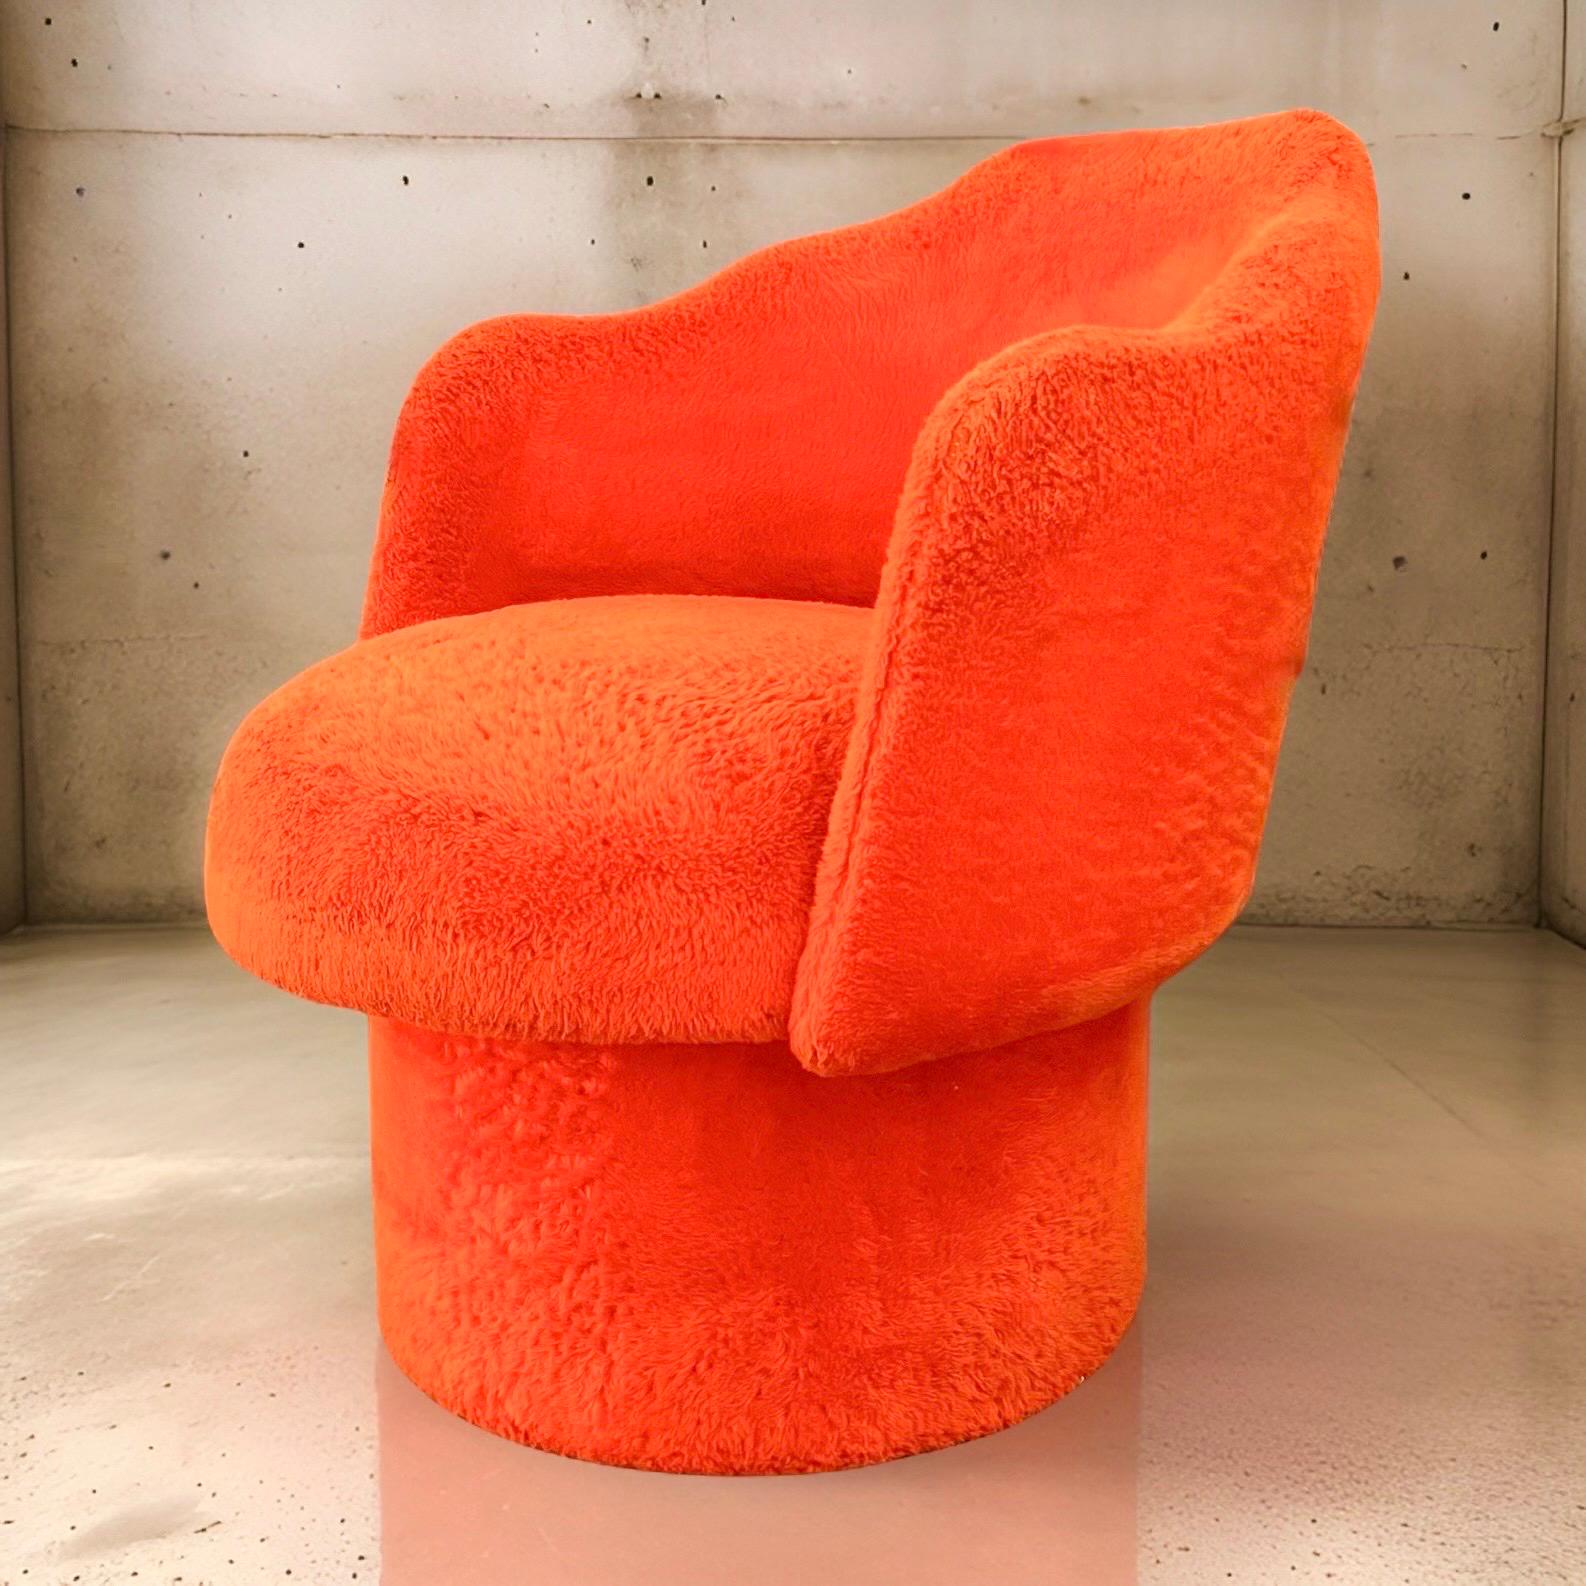 Chaise longue pivotante en forme de tonneau, de style Adrian Pearsall, datant du milieu du siècle dernier. Fabrice présente un revêtement original orange-tangerine, doux au toucher et à l'aspect hirsute - semblable à un tissu bouclé mais avec un peu